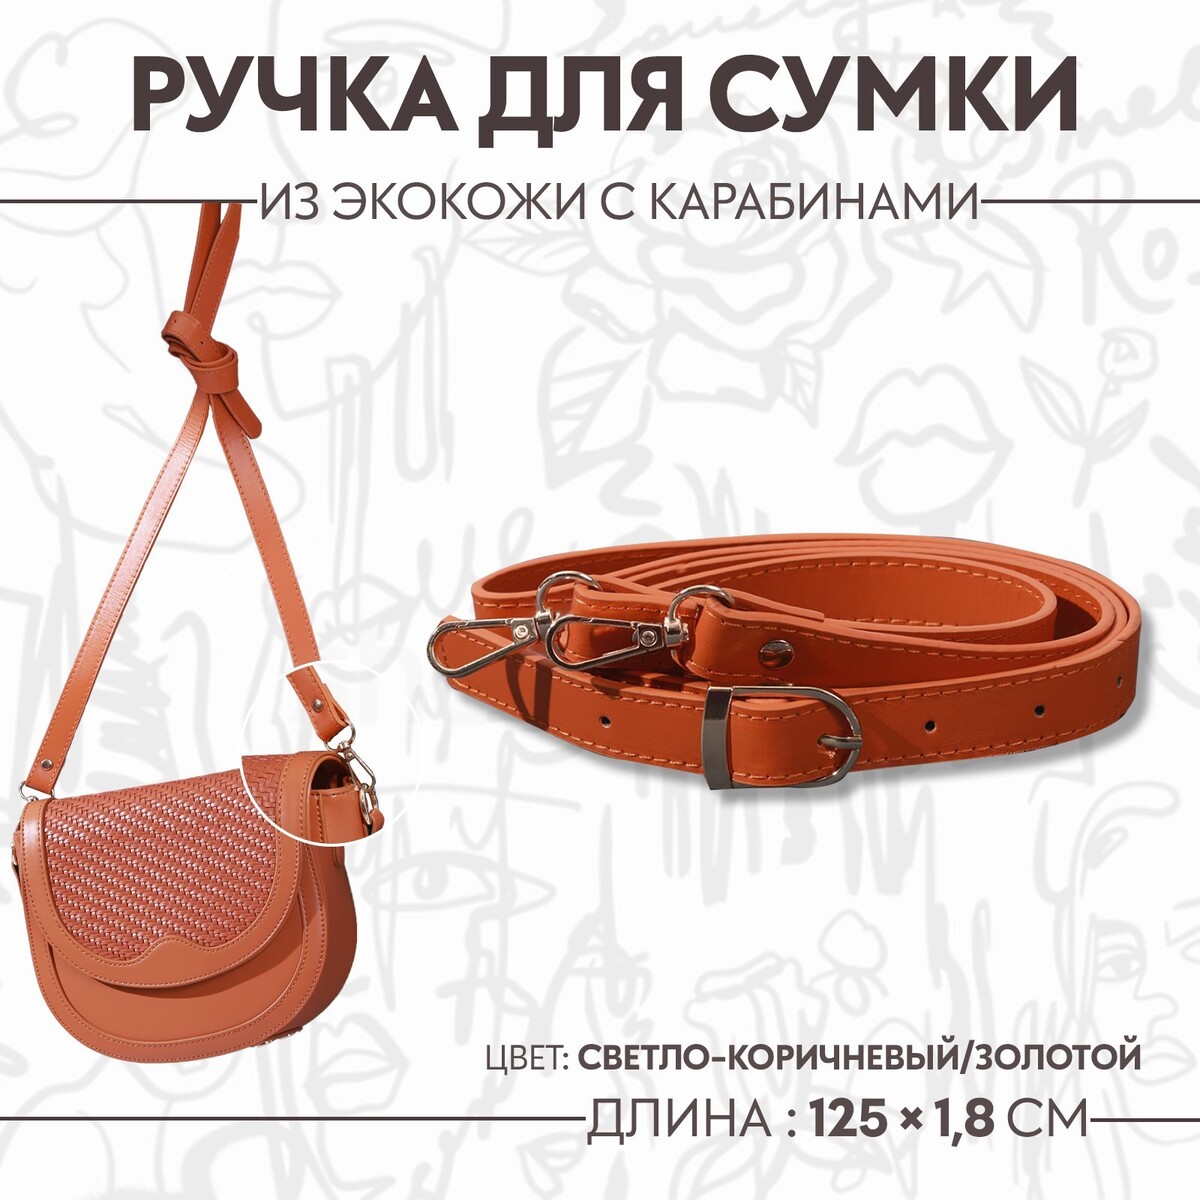 Ручка для сумки из экокожи, с карабинами, 125 × 1,8 см, цвет светло-коричневый